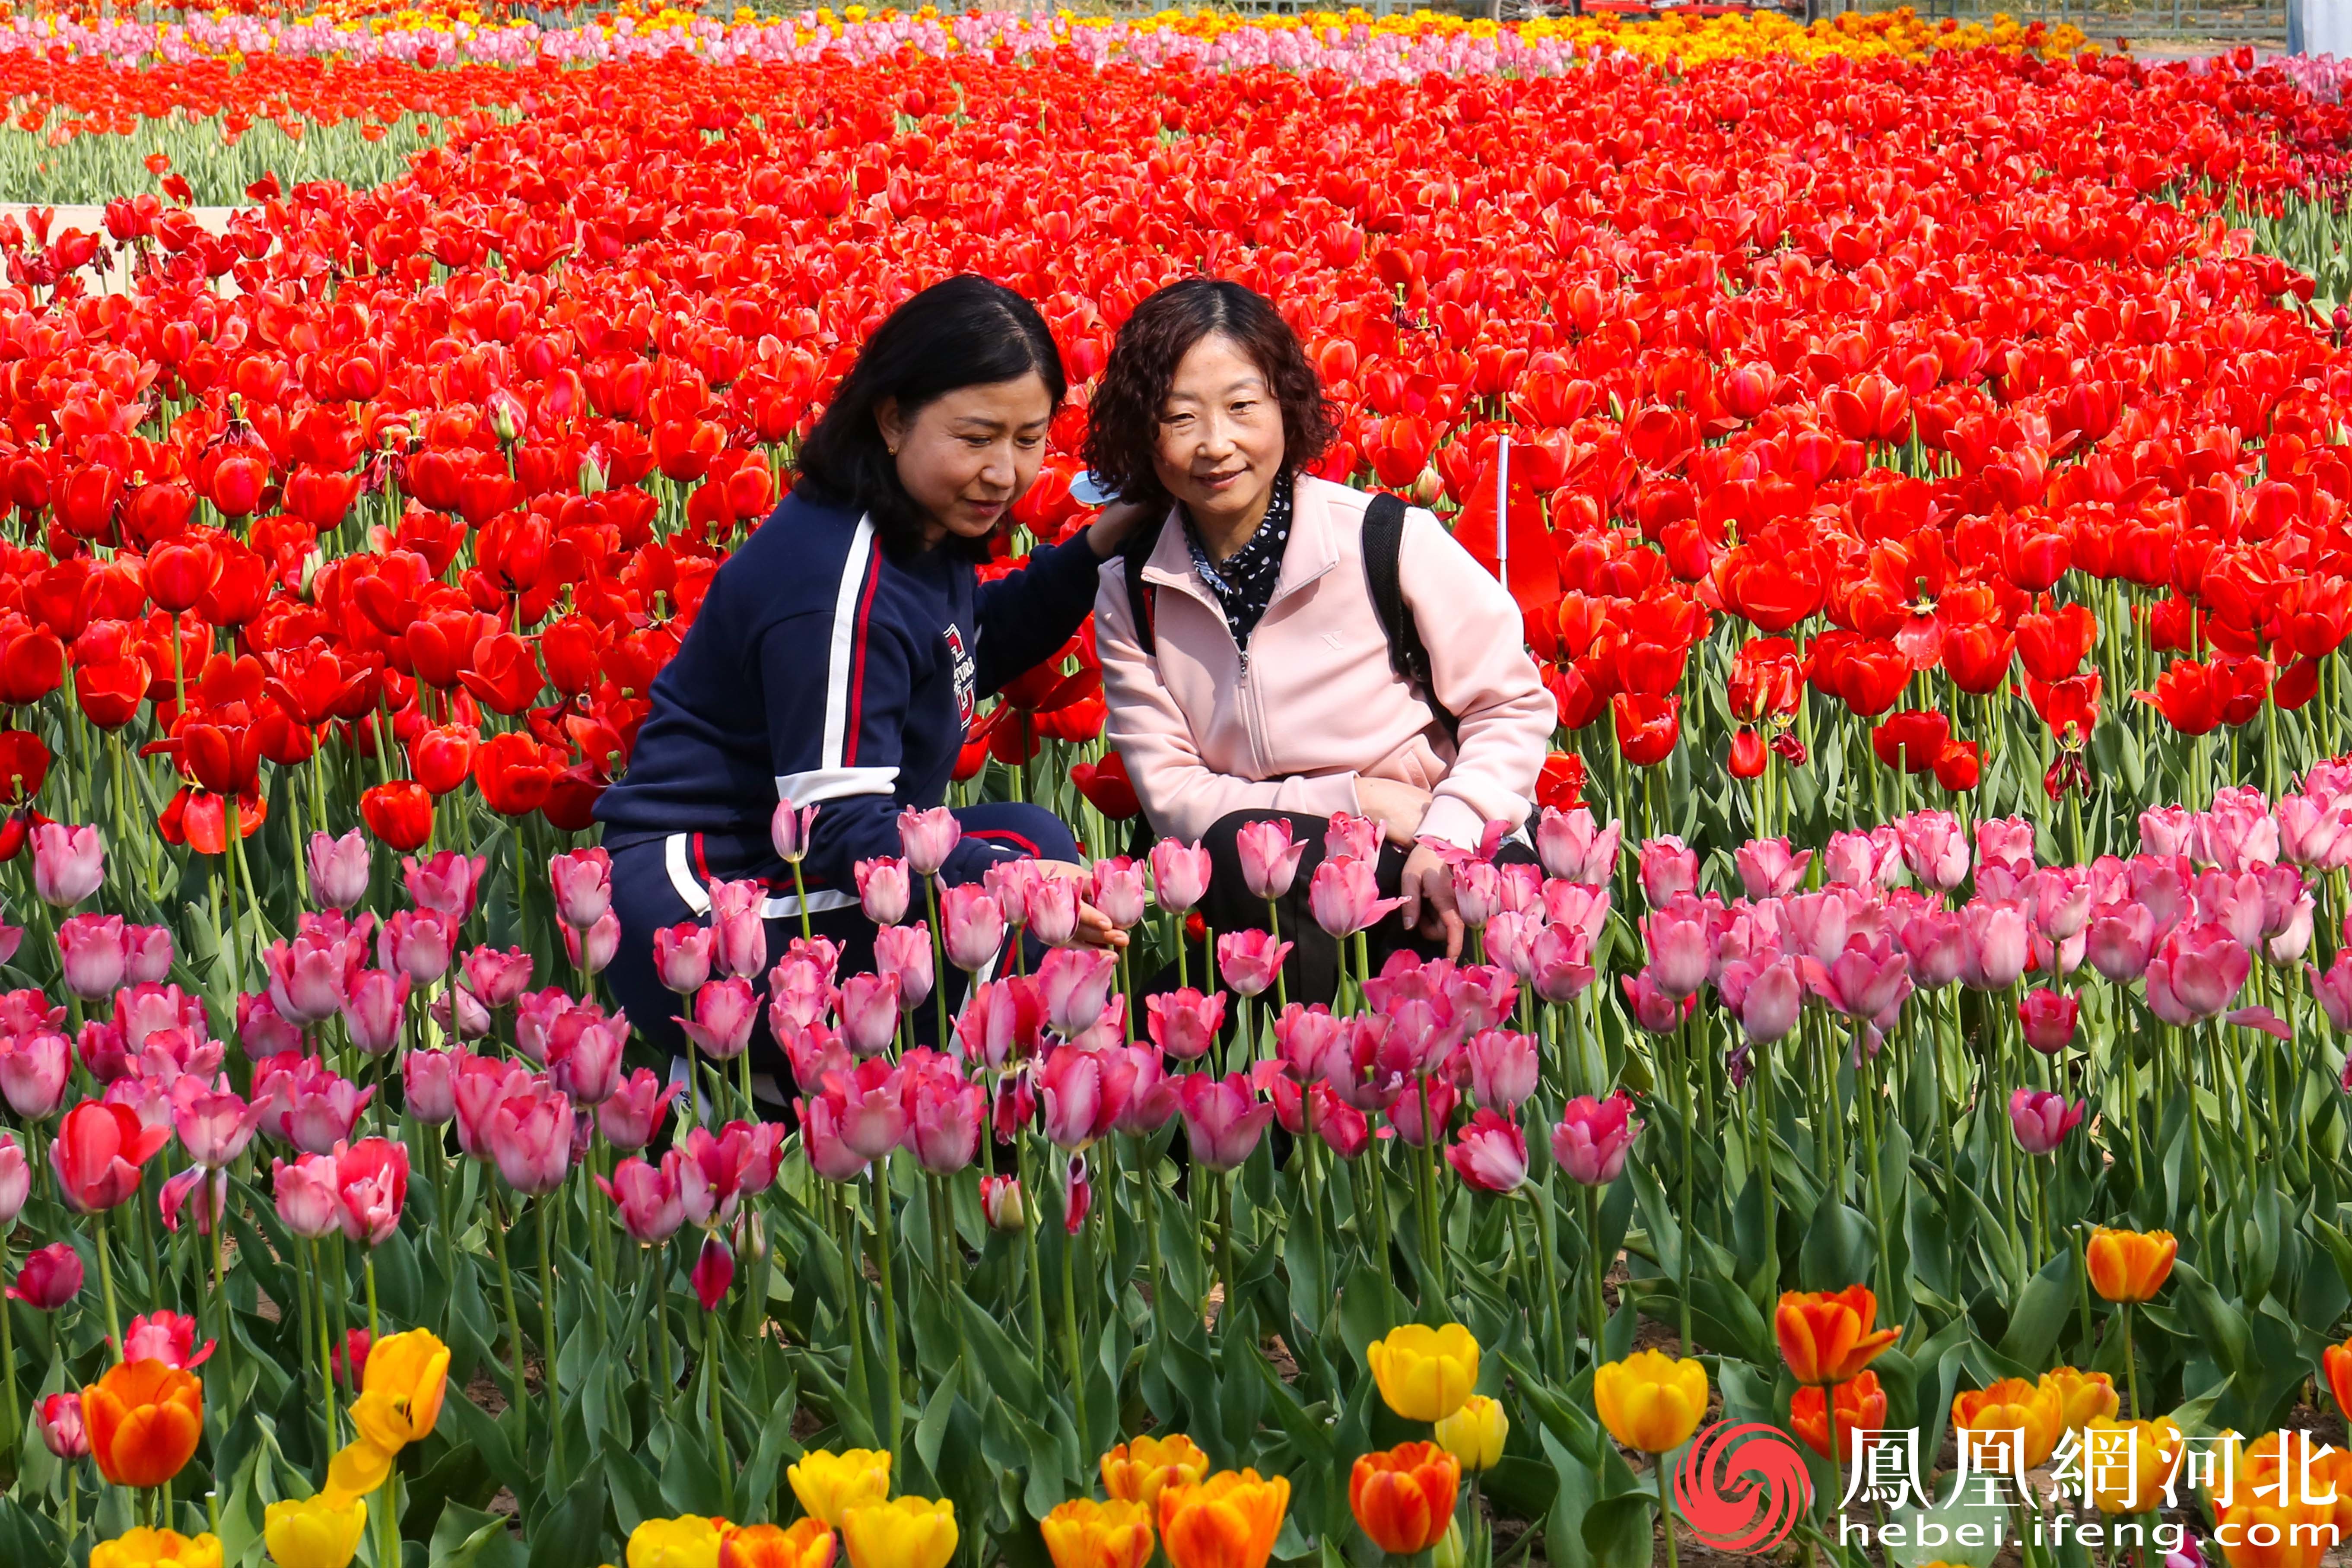 两位市民正静静地赏花，她们的脸上洋溢着淡淡的微笑。